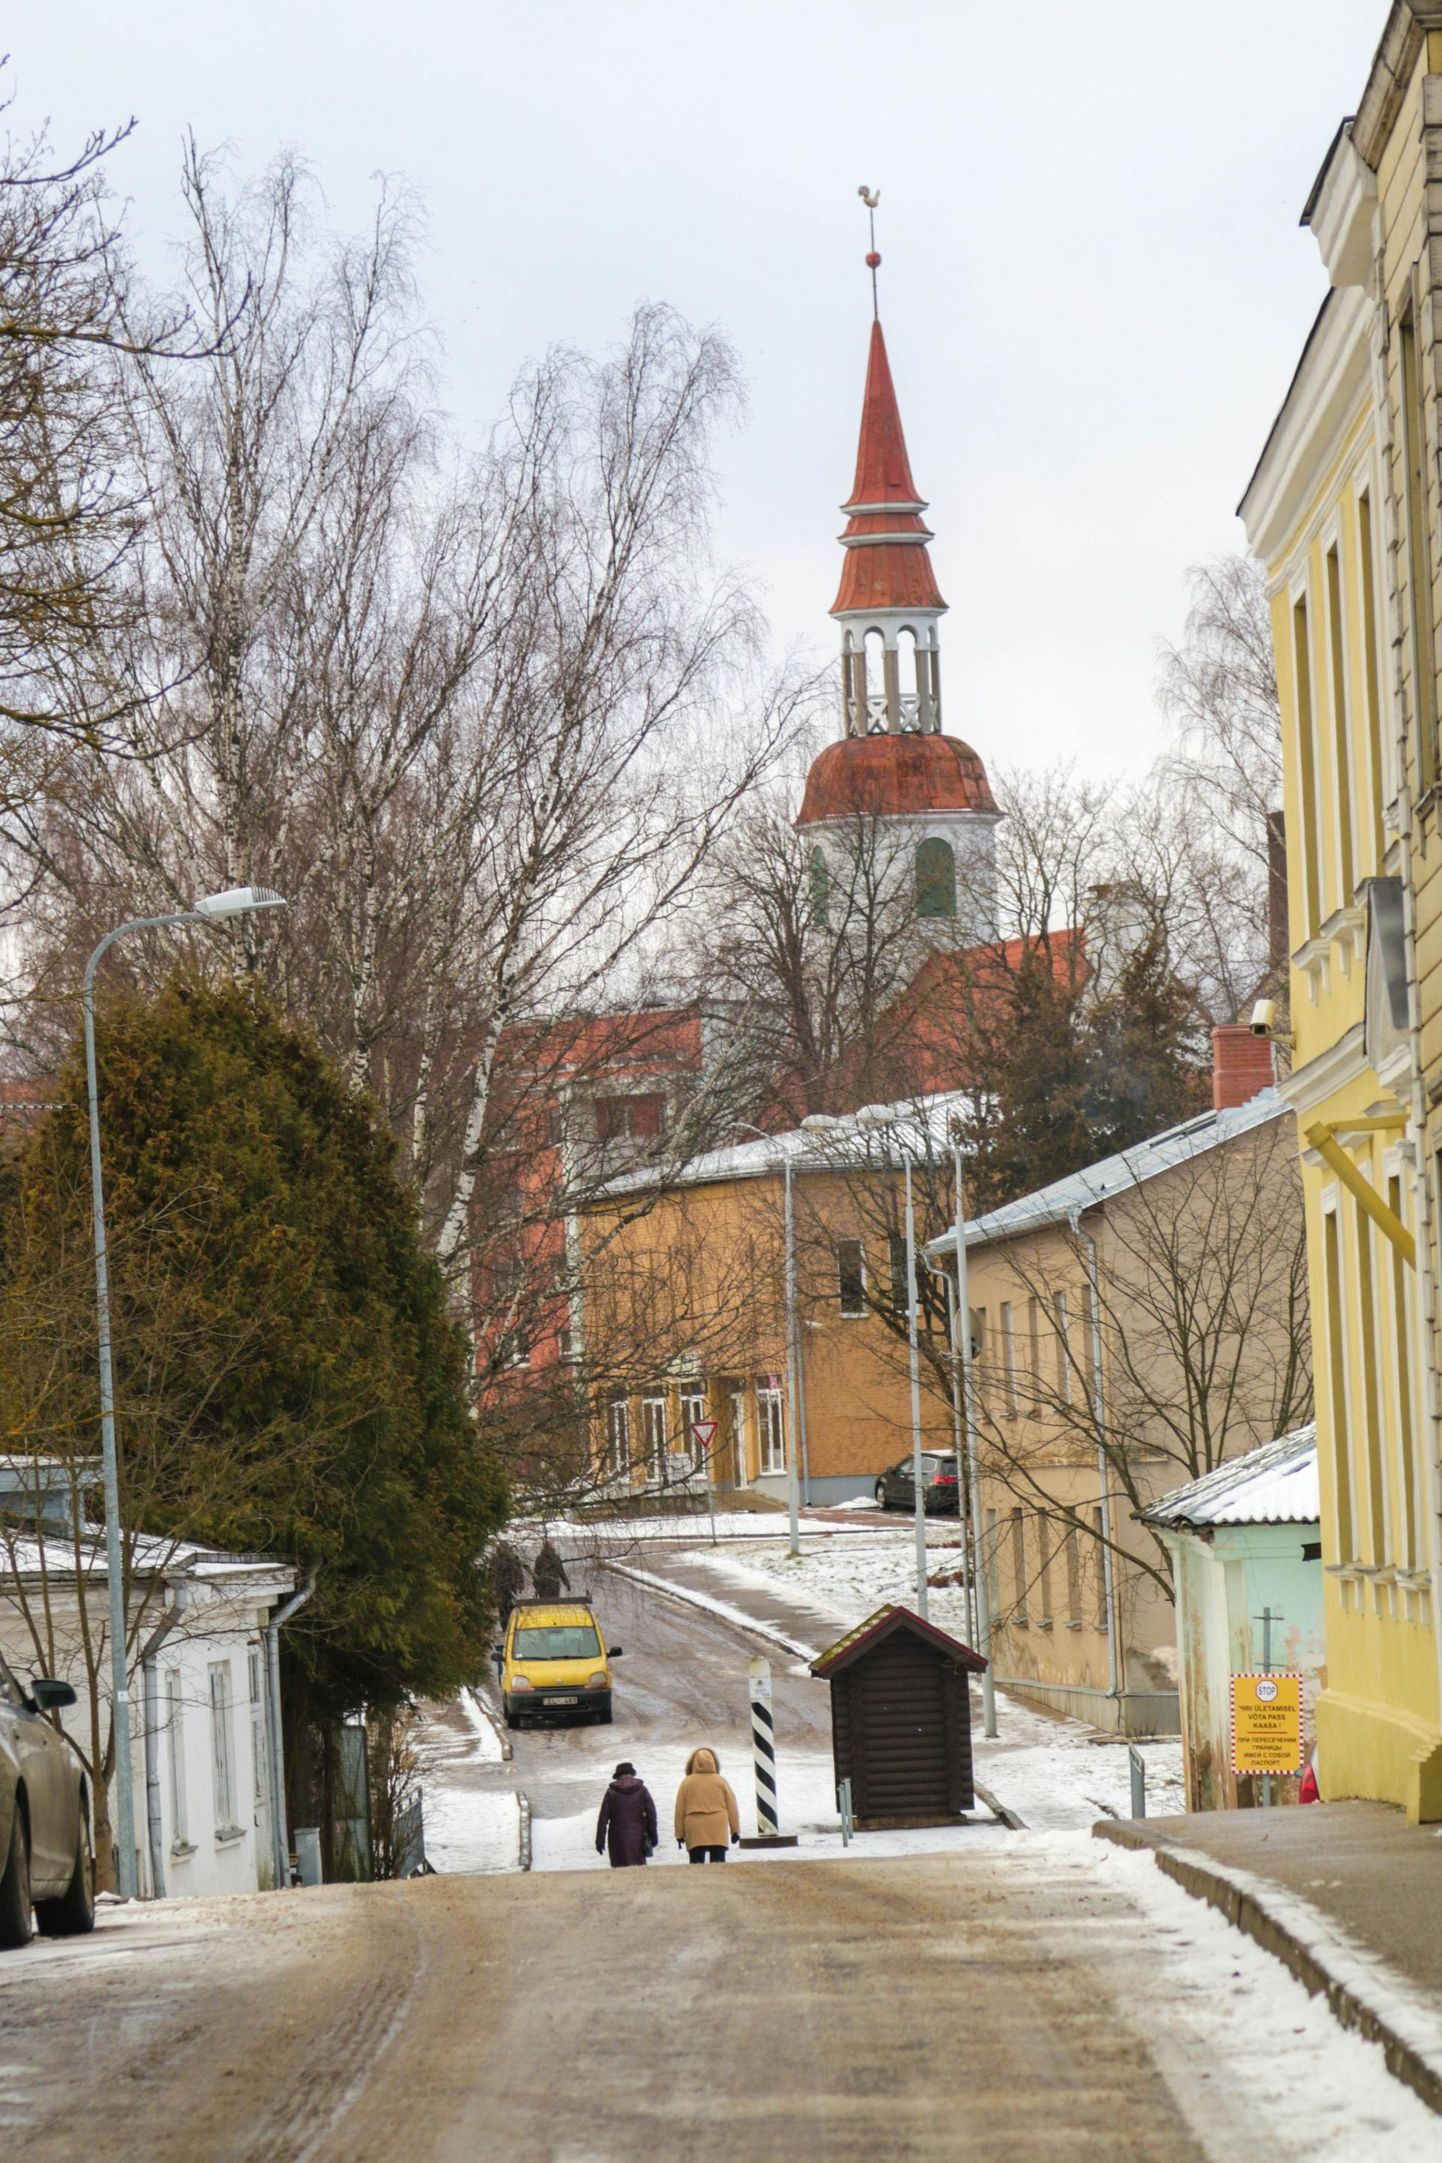 Vaade Valga Sõpruse tänavast Valka kiriku suunas, kuhu tuleb ühise linnasüdame ehituse käigus jalakäijate tänav.